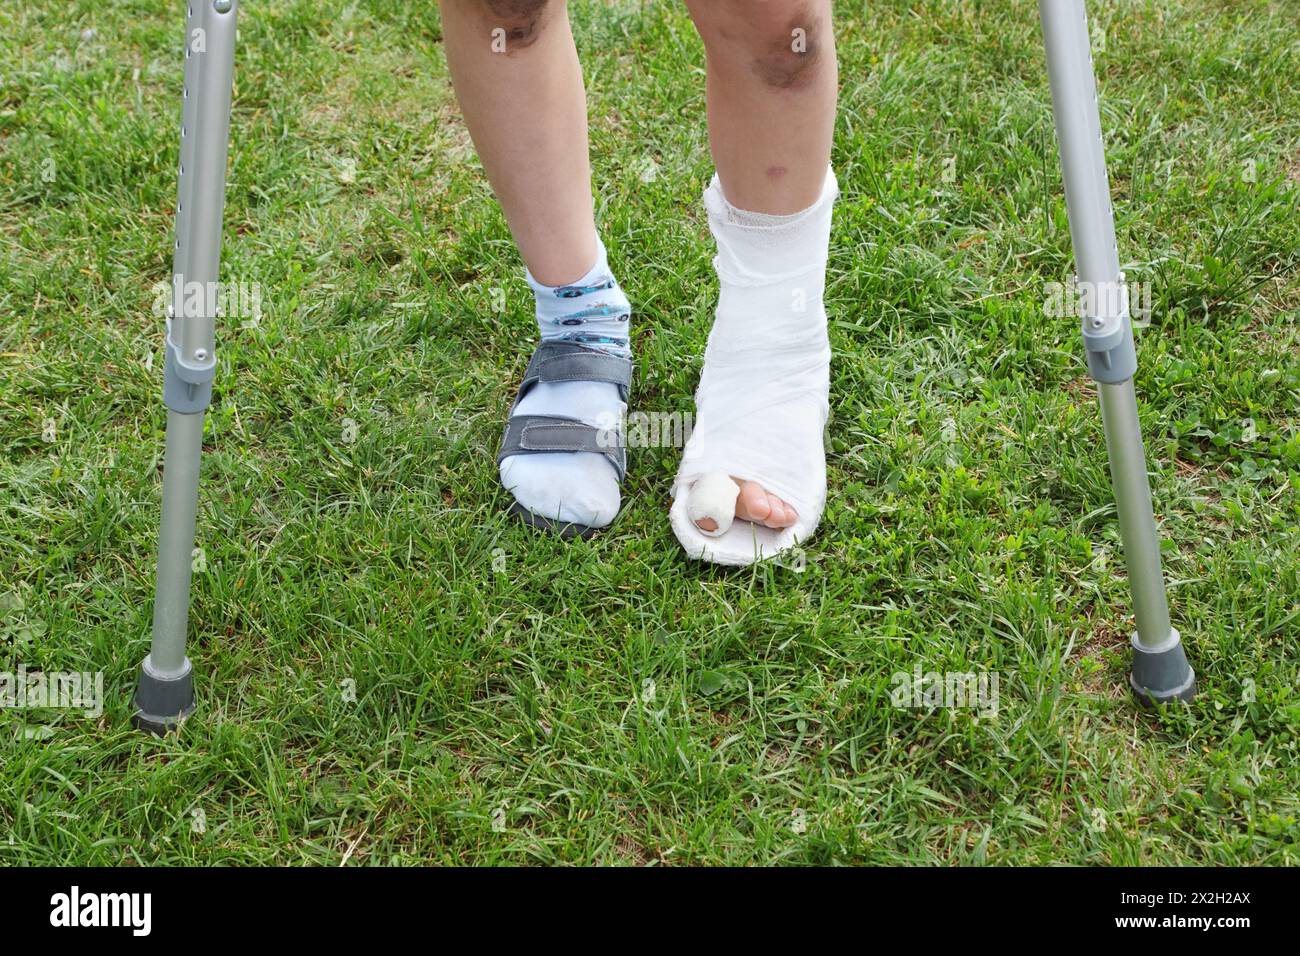 Jambes du petit garçon sur des béquilles ; jambe gauche en plâtre ; garçon debout sur l'herbe verte Banque D'Images